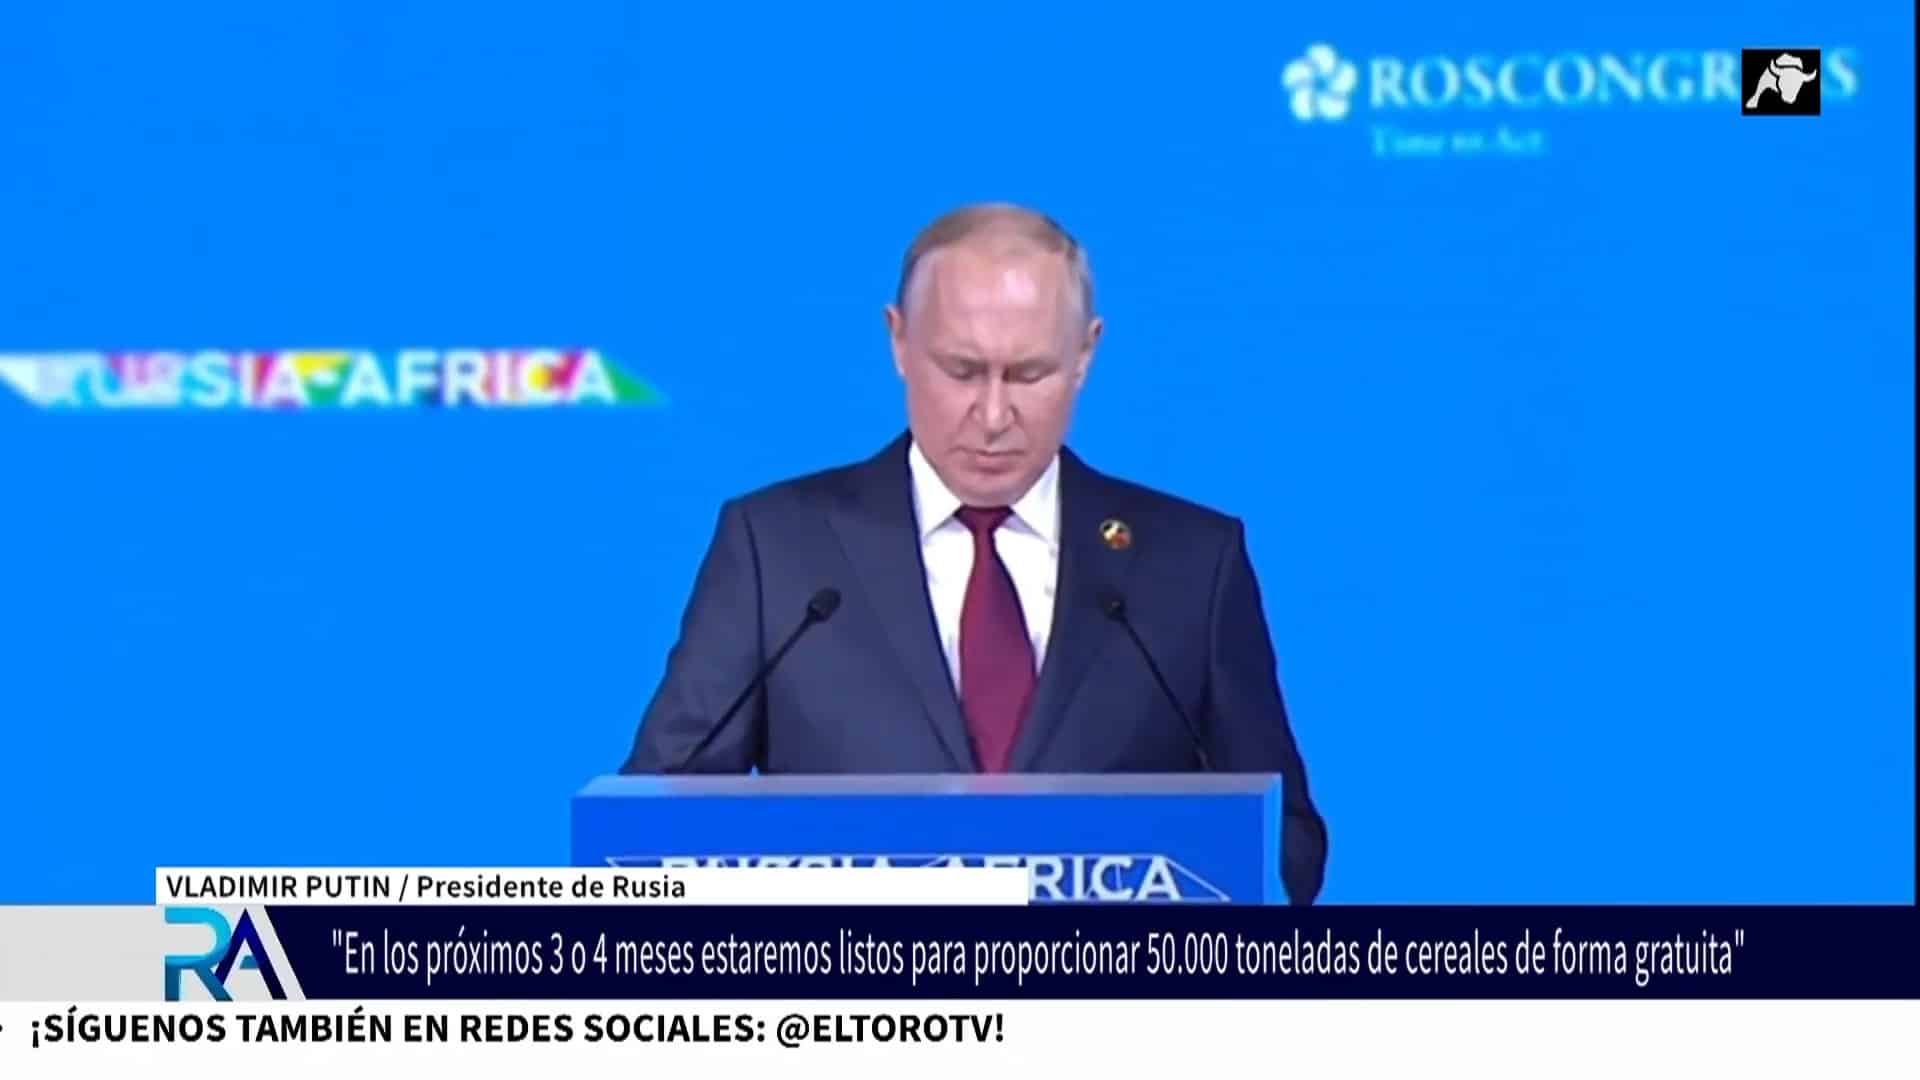 Putin se desvive por lavar su imagen y contrarrestar el aislamiento de Rusia: promete enviar hasta 50.000 toneladas de grano gratis a 6 países africanos